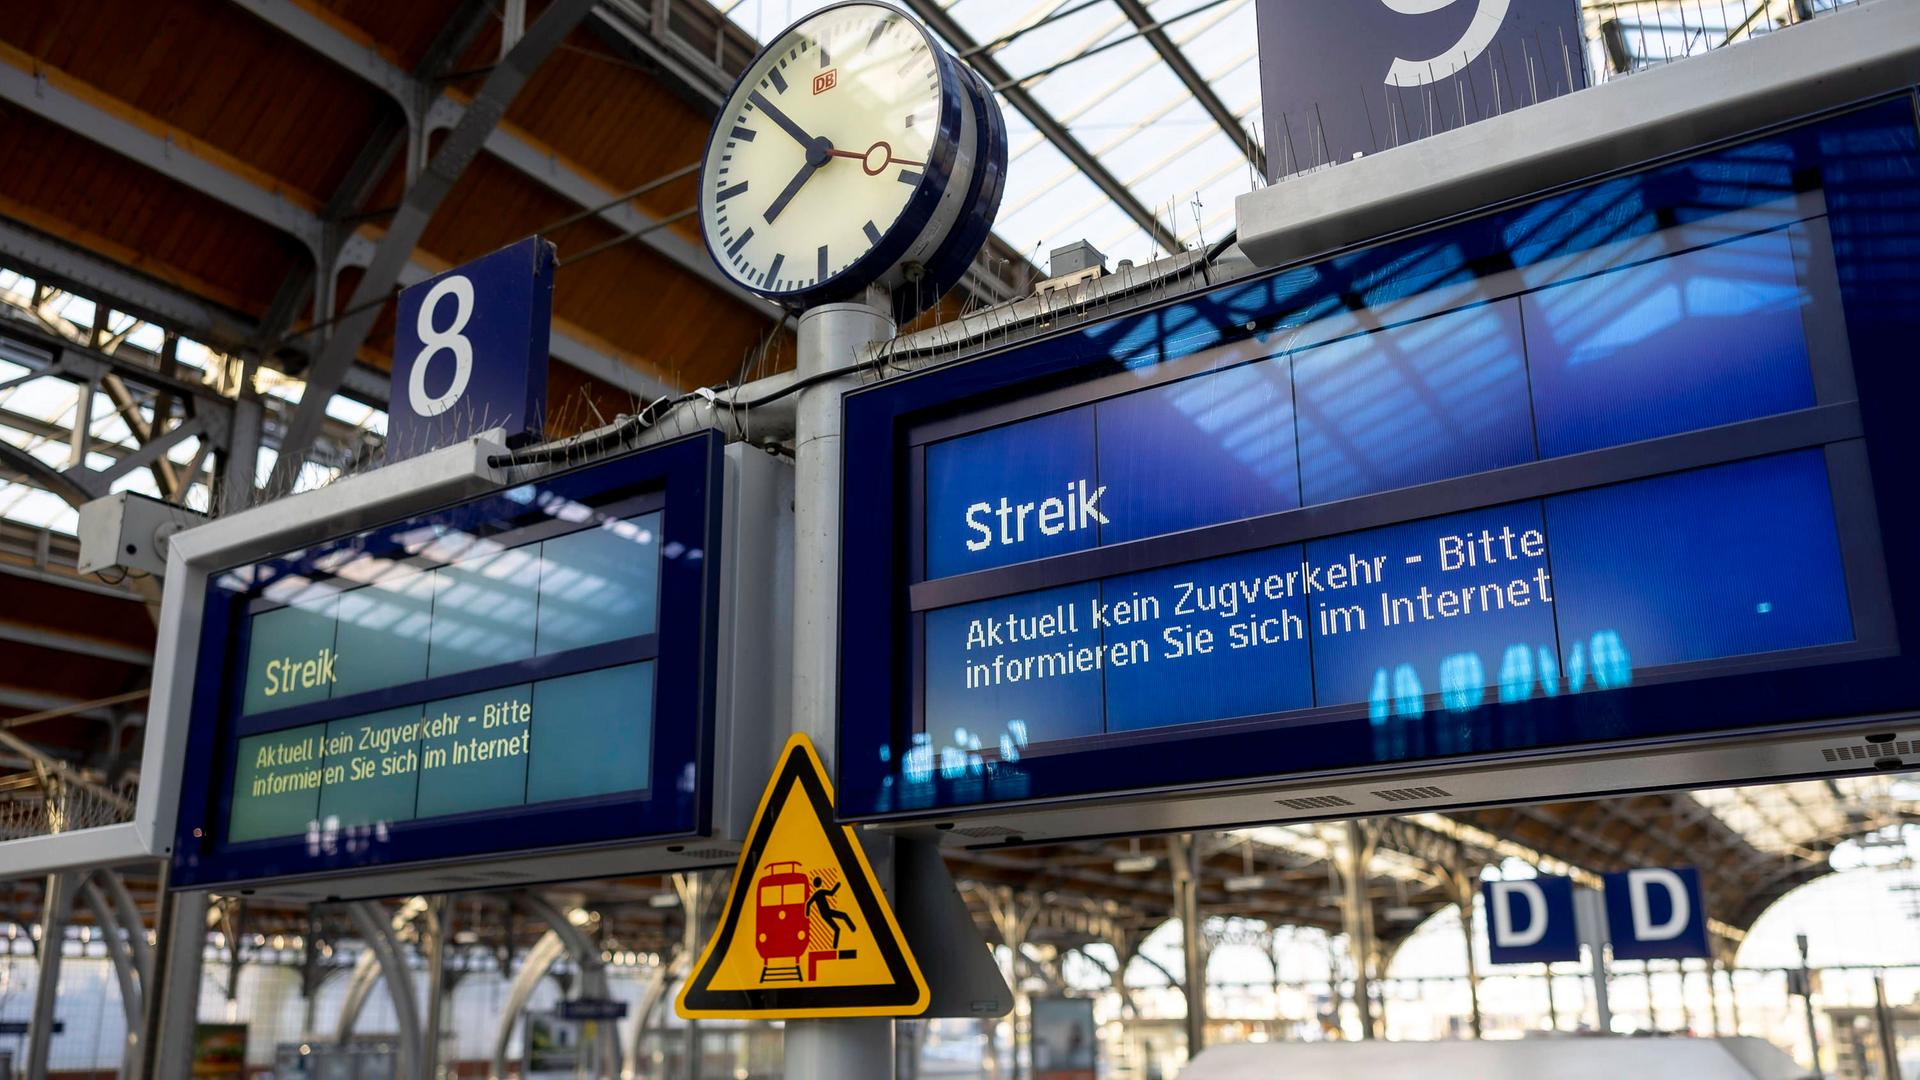 Im Bahnhof blickt man auf eine Hinweistafel, auf der steht, dass kein Zugverkehr mehr stattfindet.